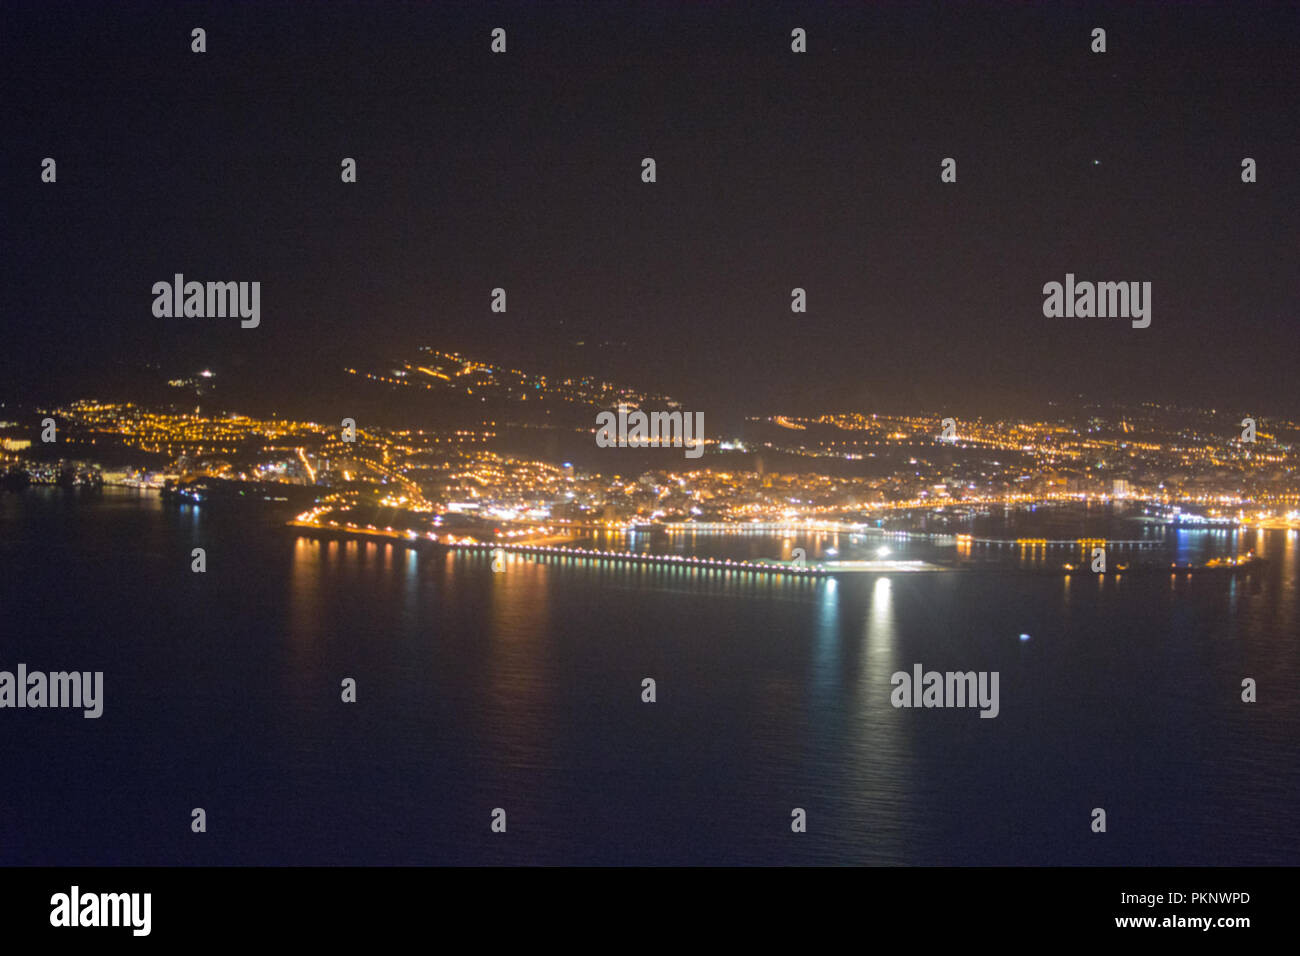 Vista aérea de la ciudad iluminada de noche de Palma de Mallorca, España Foto de stock